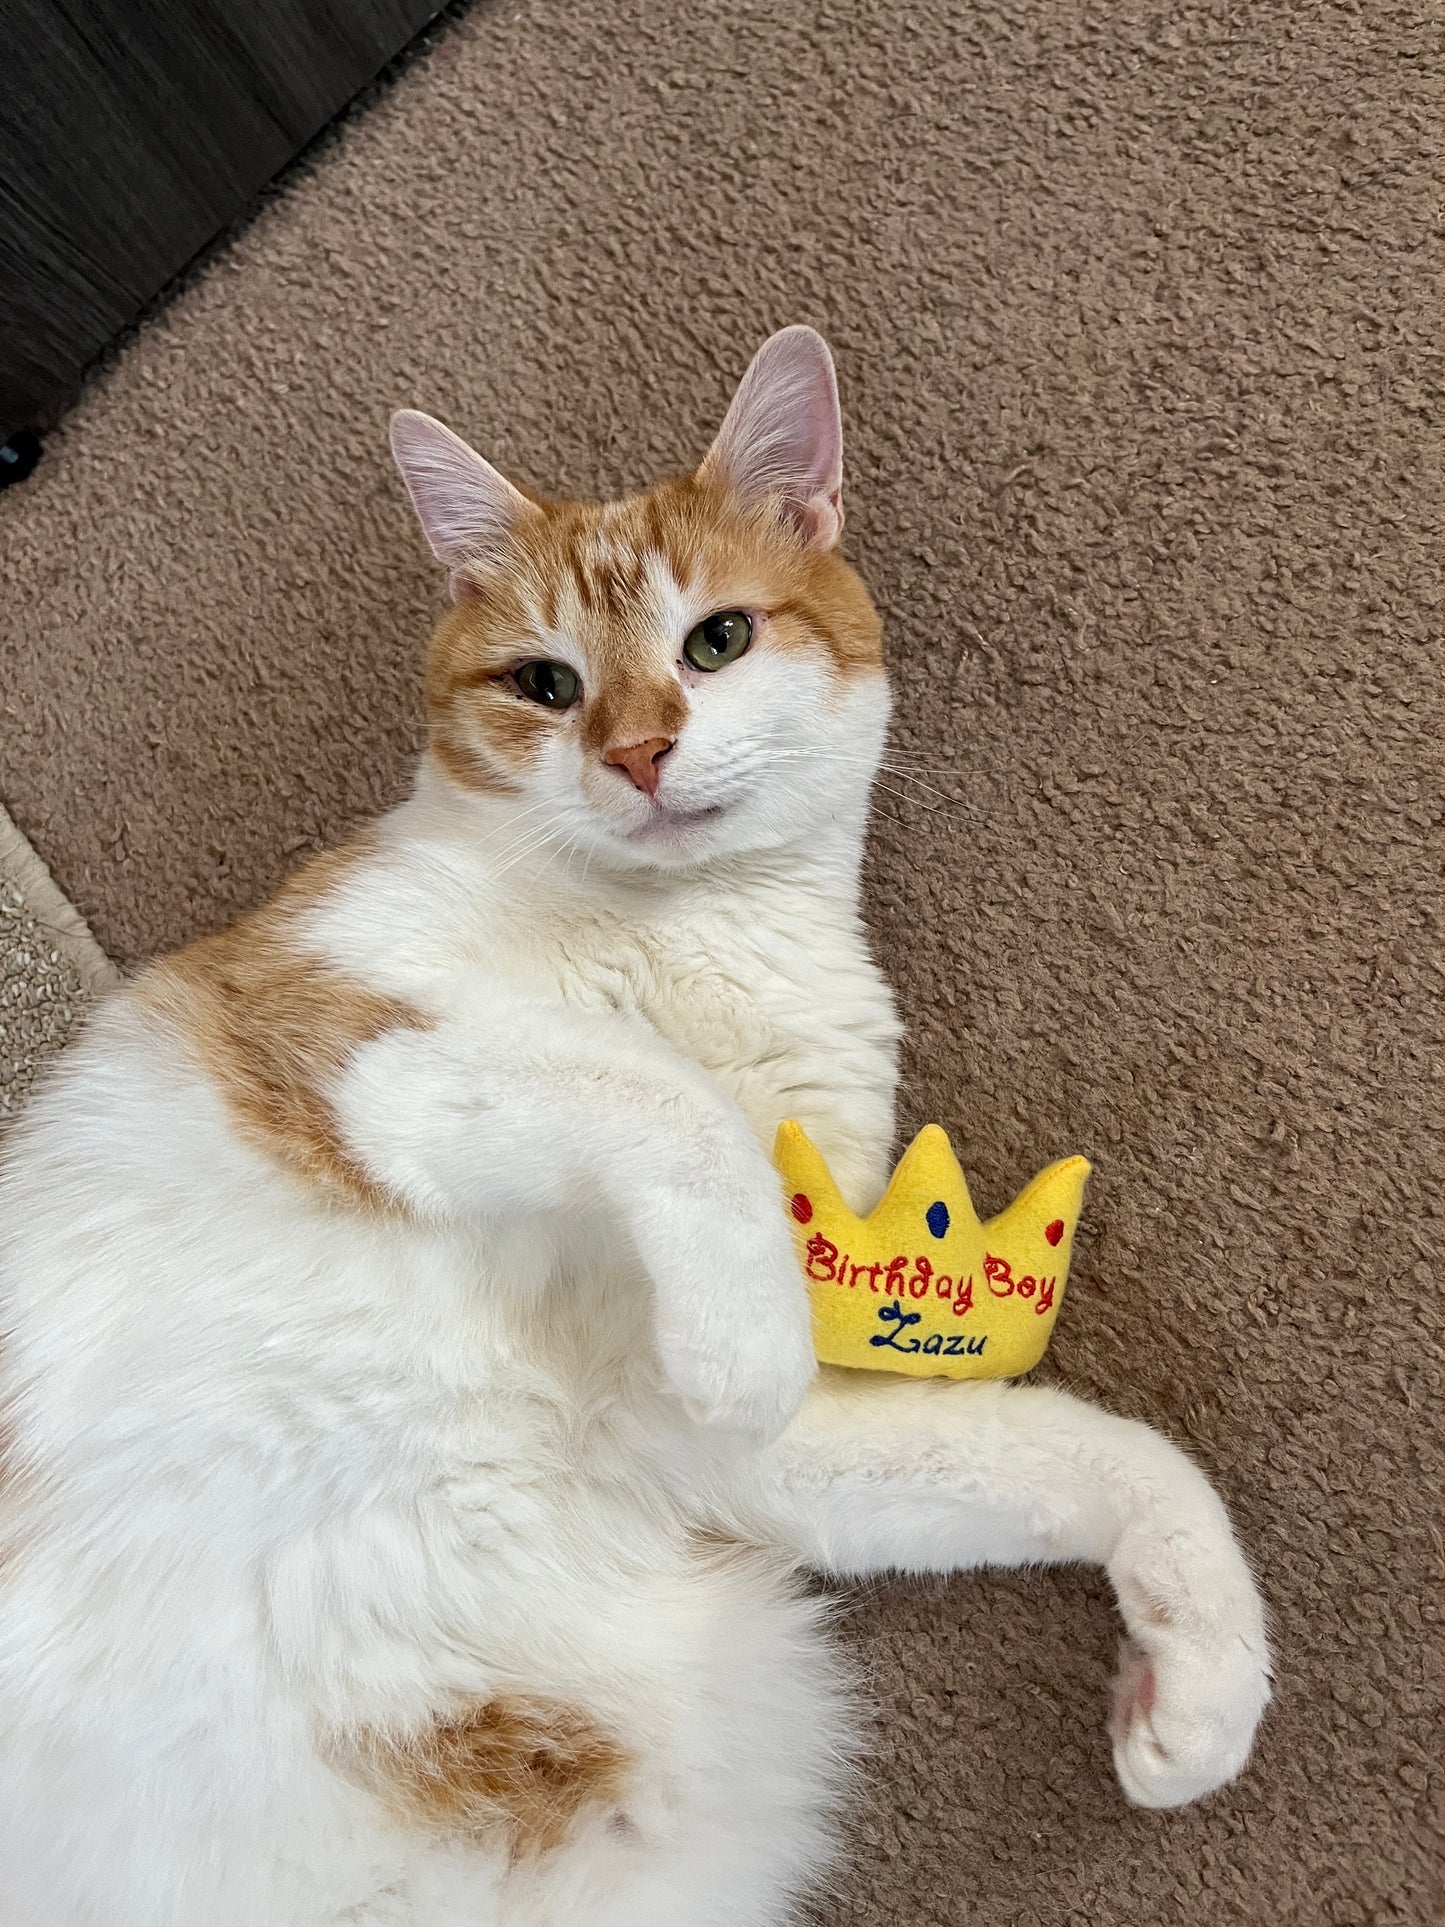 Birthday Crown Custom Cat Toy- Personalized Gotcha Day Catnip Toy